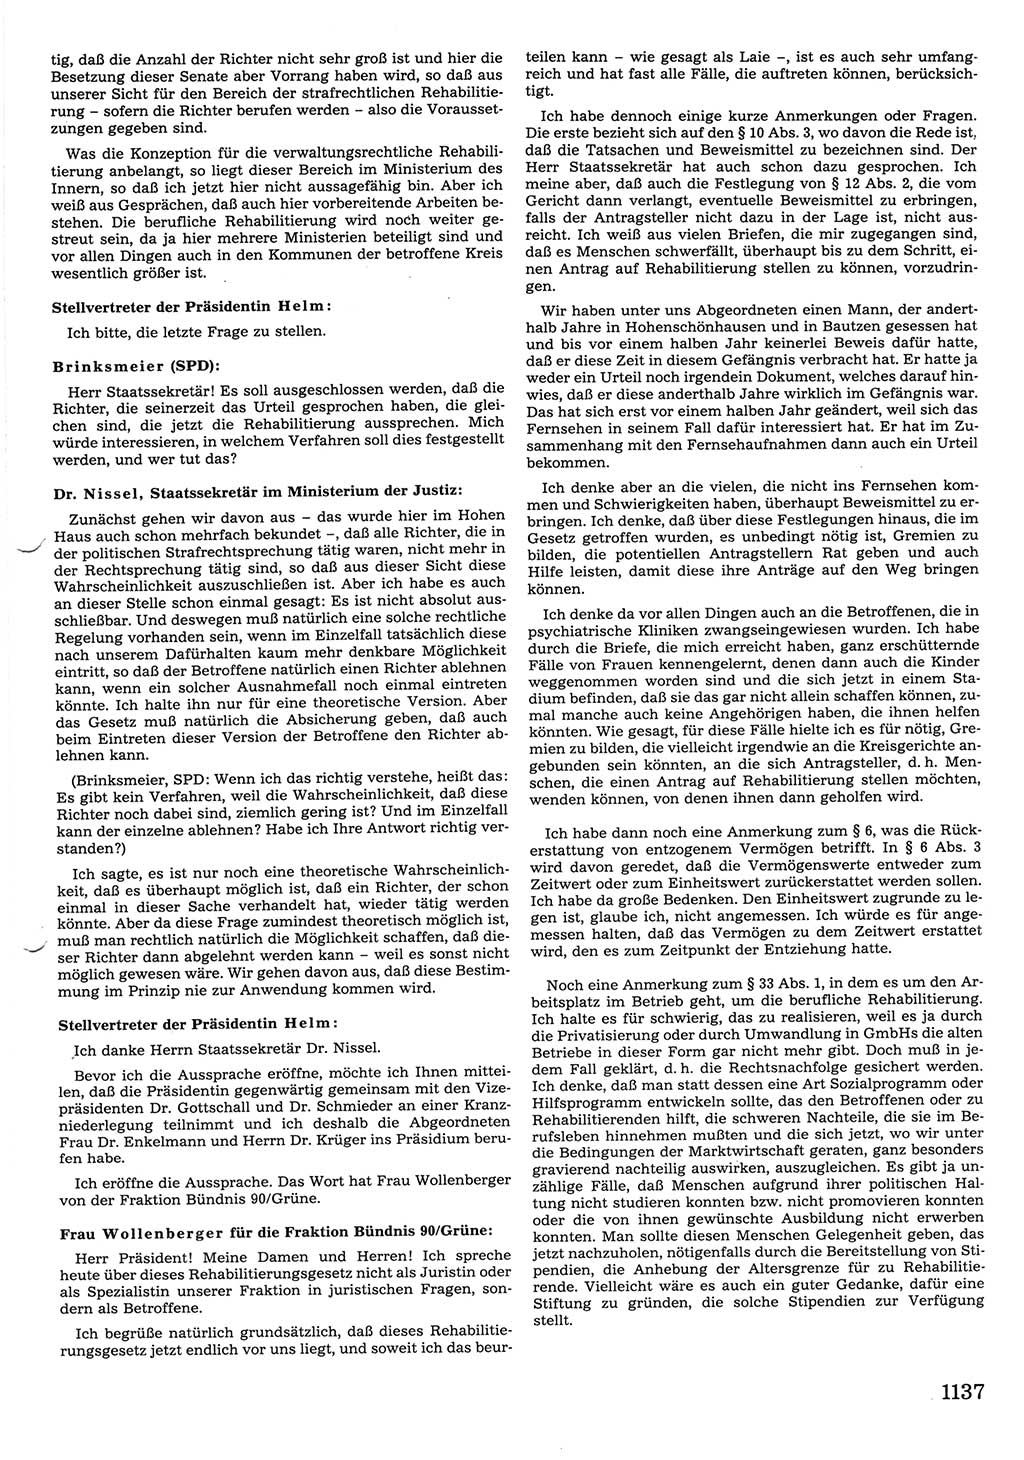 Tagungen der Volkskammer (VK) der Deutschen Demokratischen Republik (DDR), 10. Wahlperiode 1990, Seite 1137 (VK. DDR 10. WP. 1990, Prot. Tg. 1-38, 5.4.-2.10.1990, S. 1137)